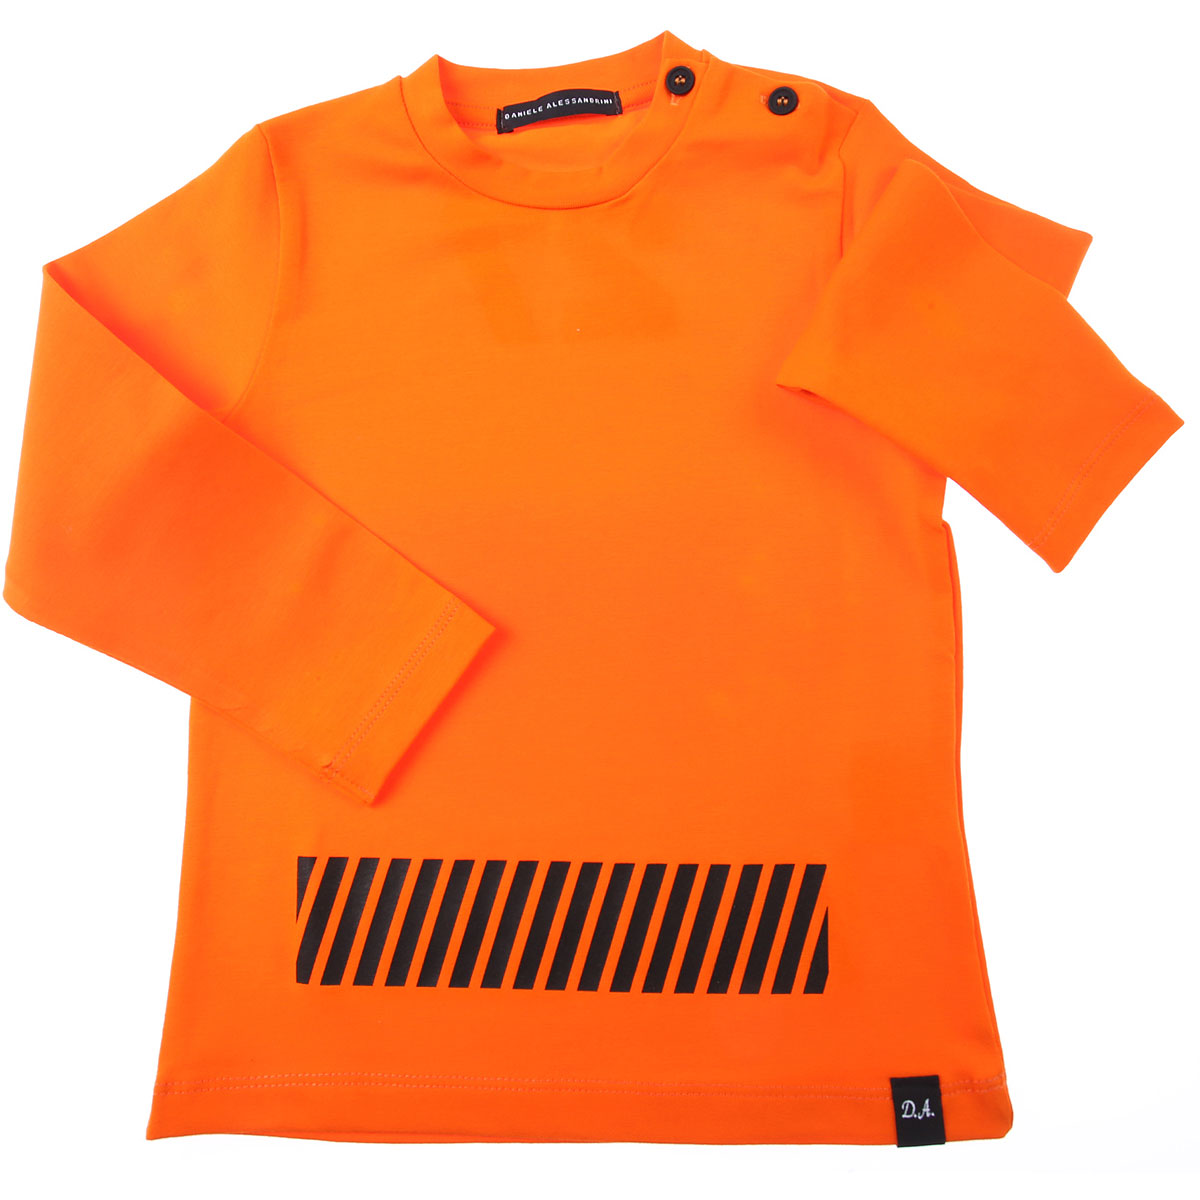 Daniele Alessandri Baby T-Shirt für Jungen Günstig im Sale, Hell Orangefarben, Baumwolle, 2017, 12 M 18M 4Y 9M